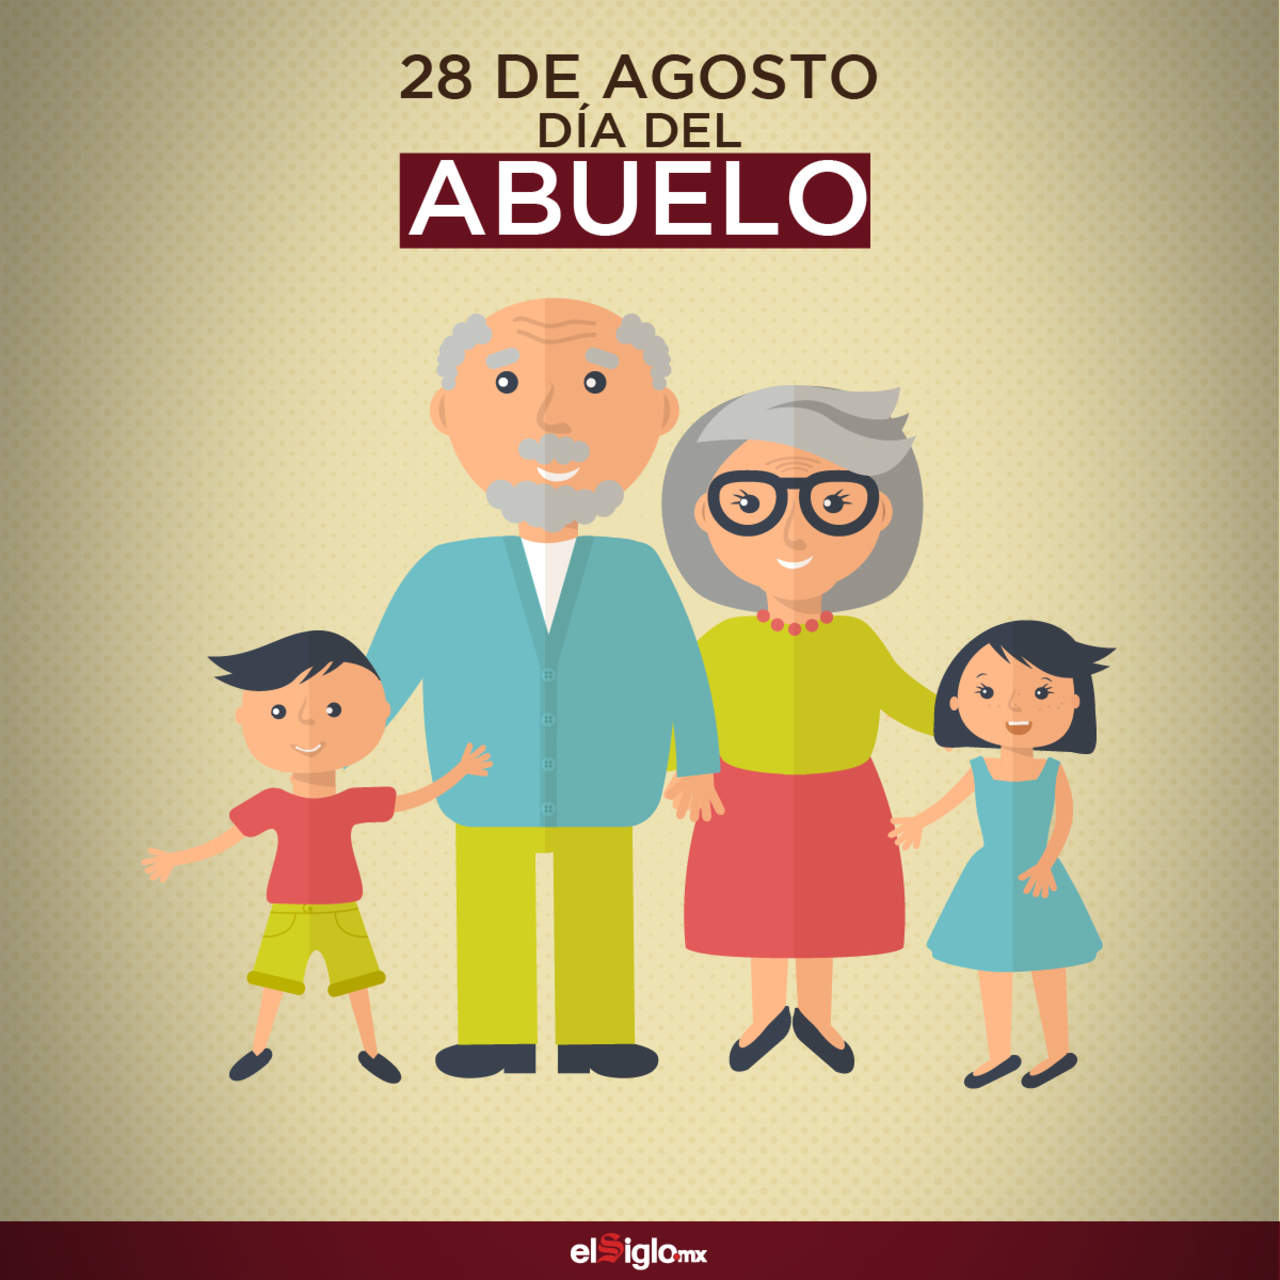 1983: El Día del Abuelo se celebra por primera vez en México